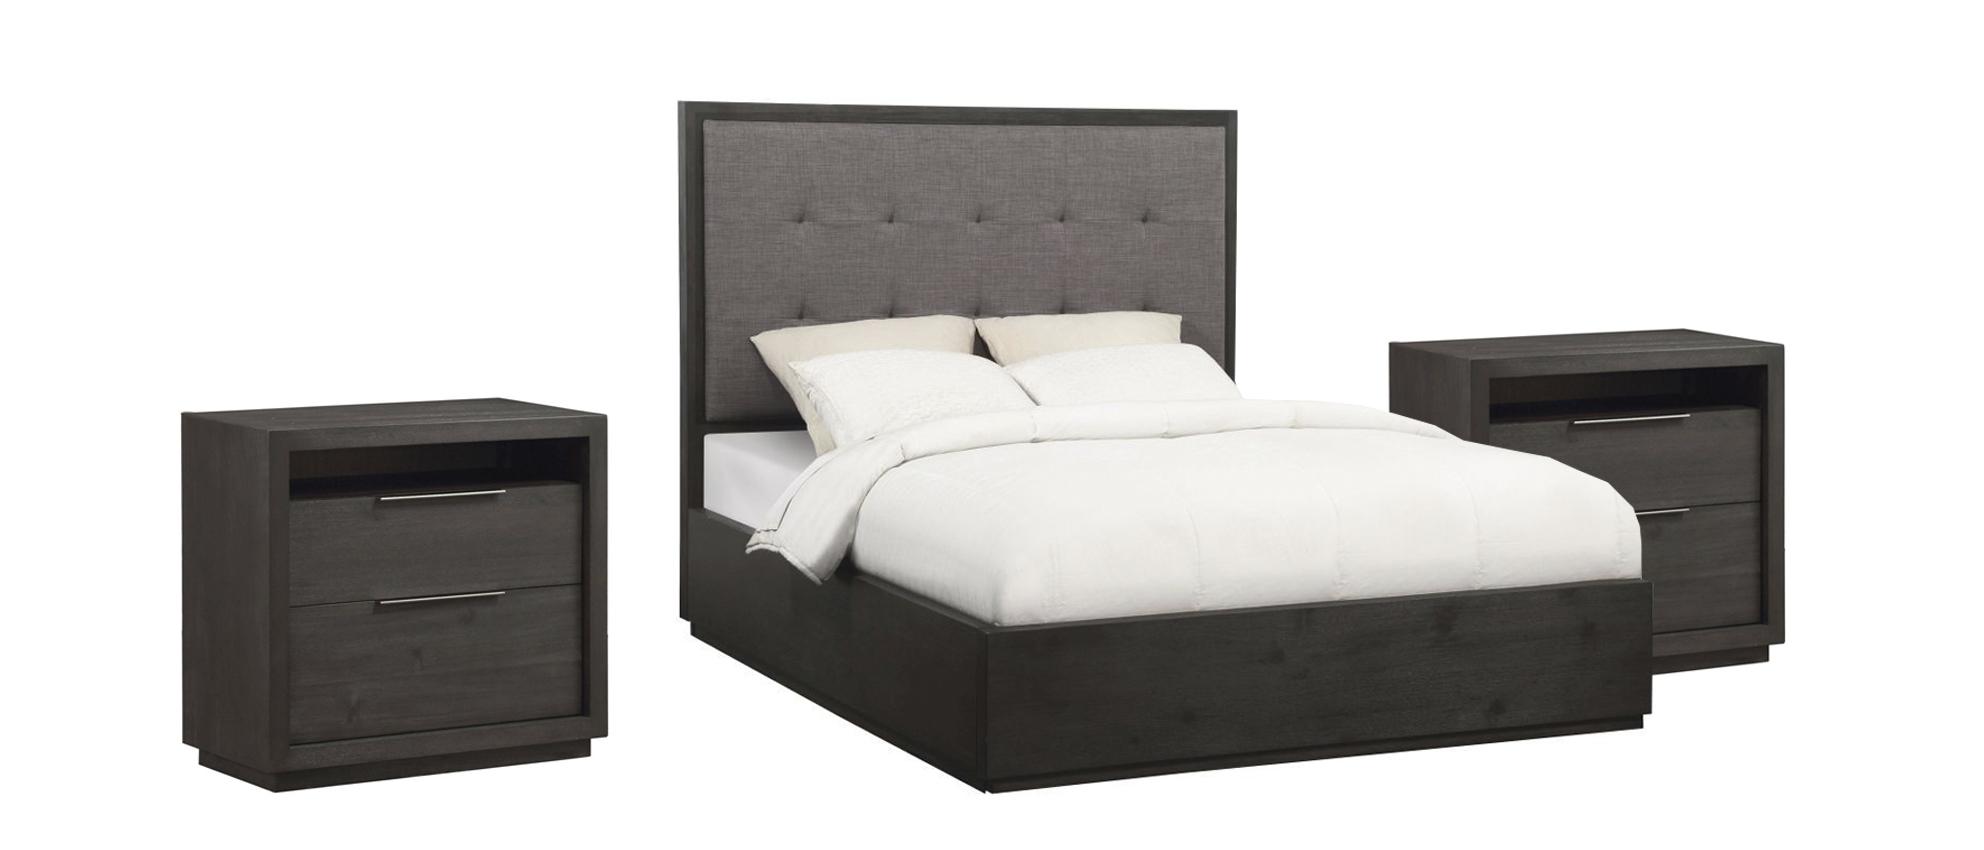 

    
Basalt Gray King PLATFORM Bedroom Set 3Pcs OXFORD by Modus Furniture
